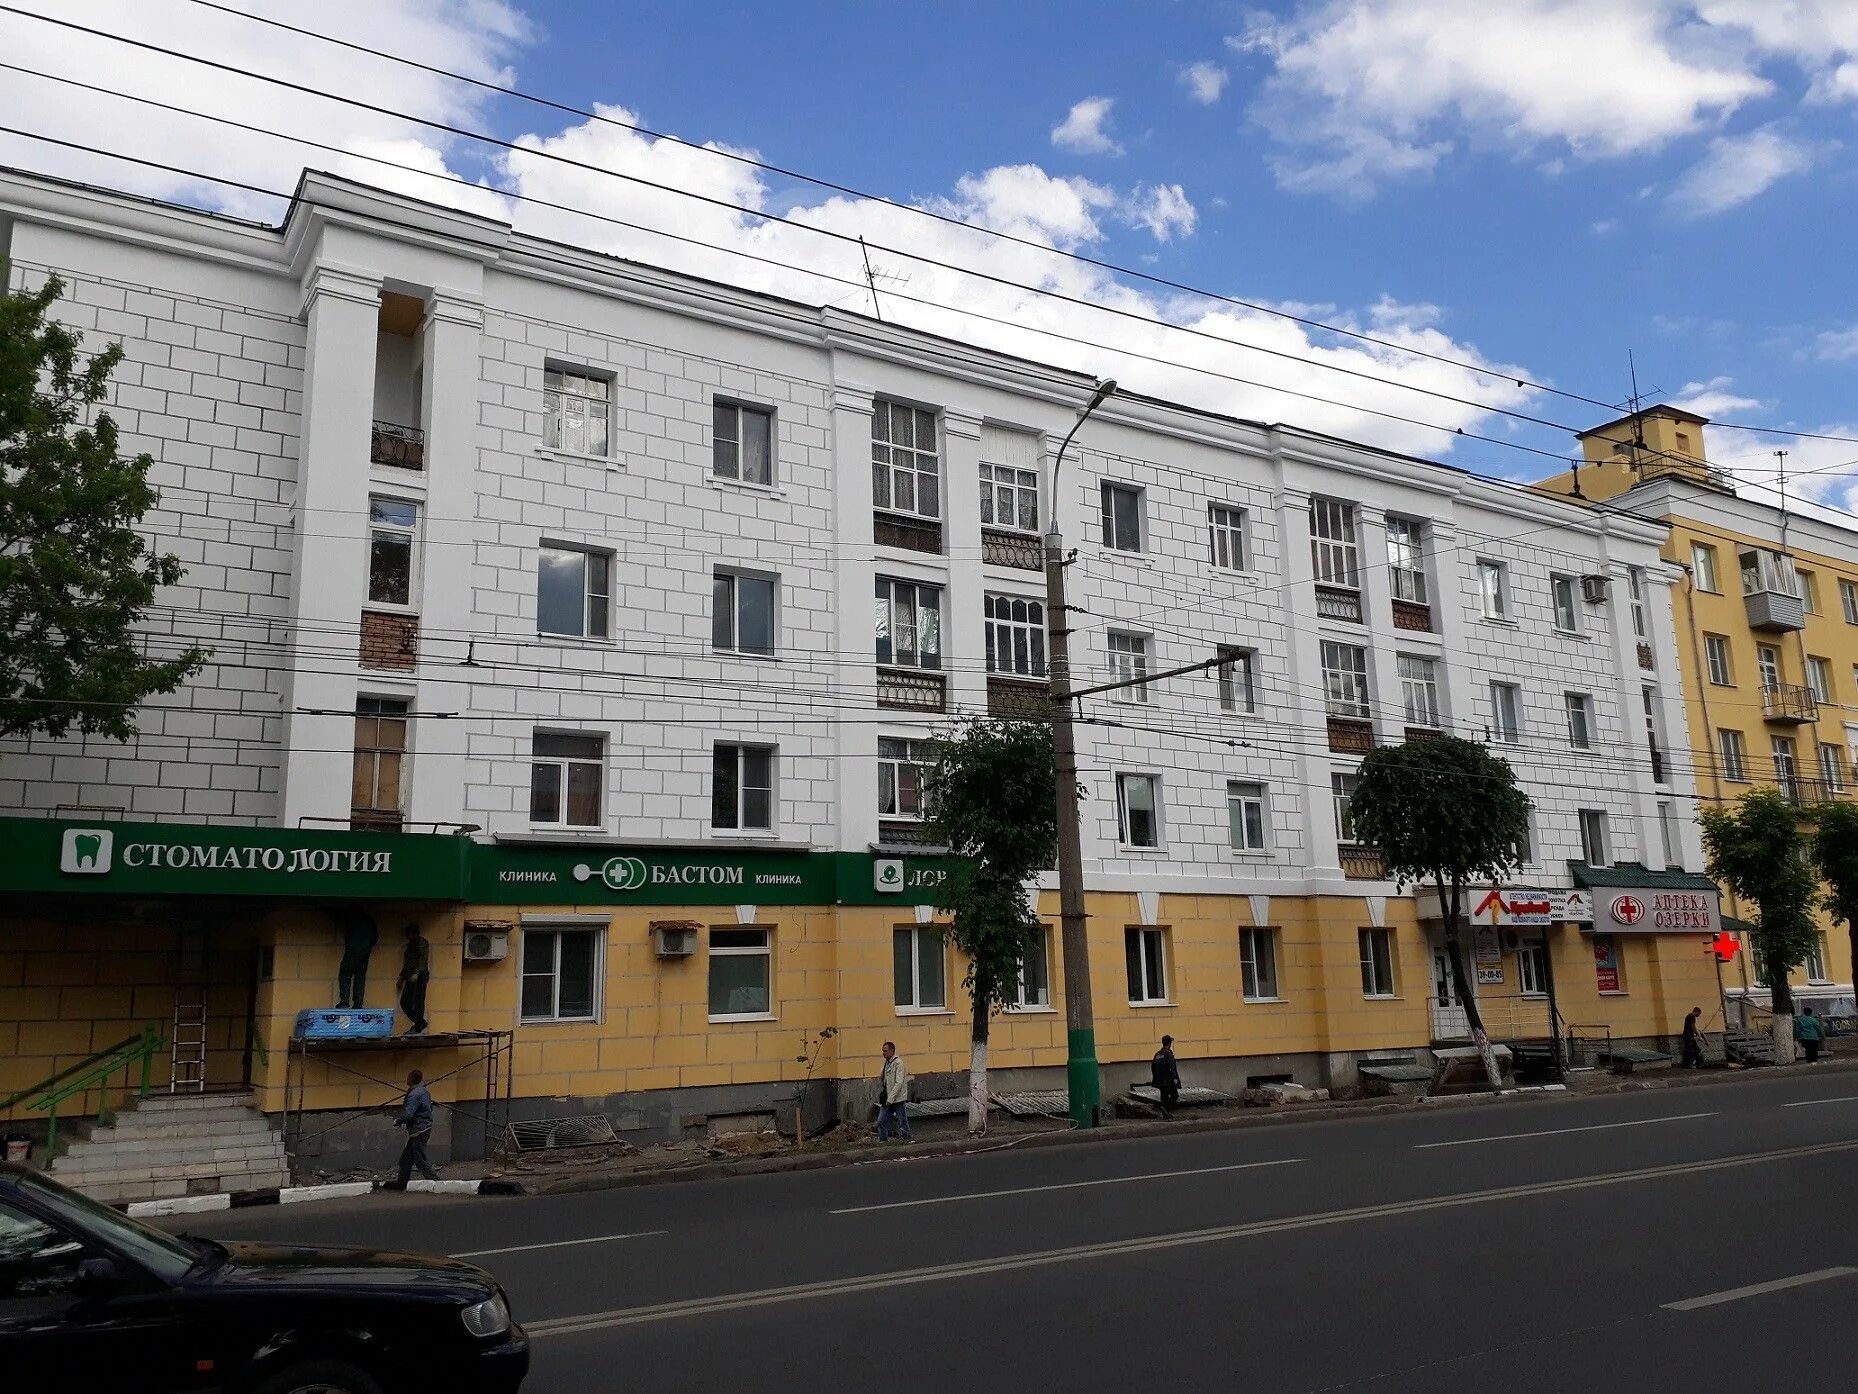 Кировская улица 5